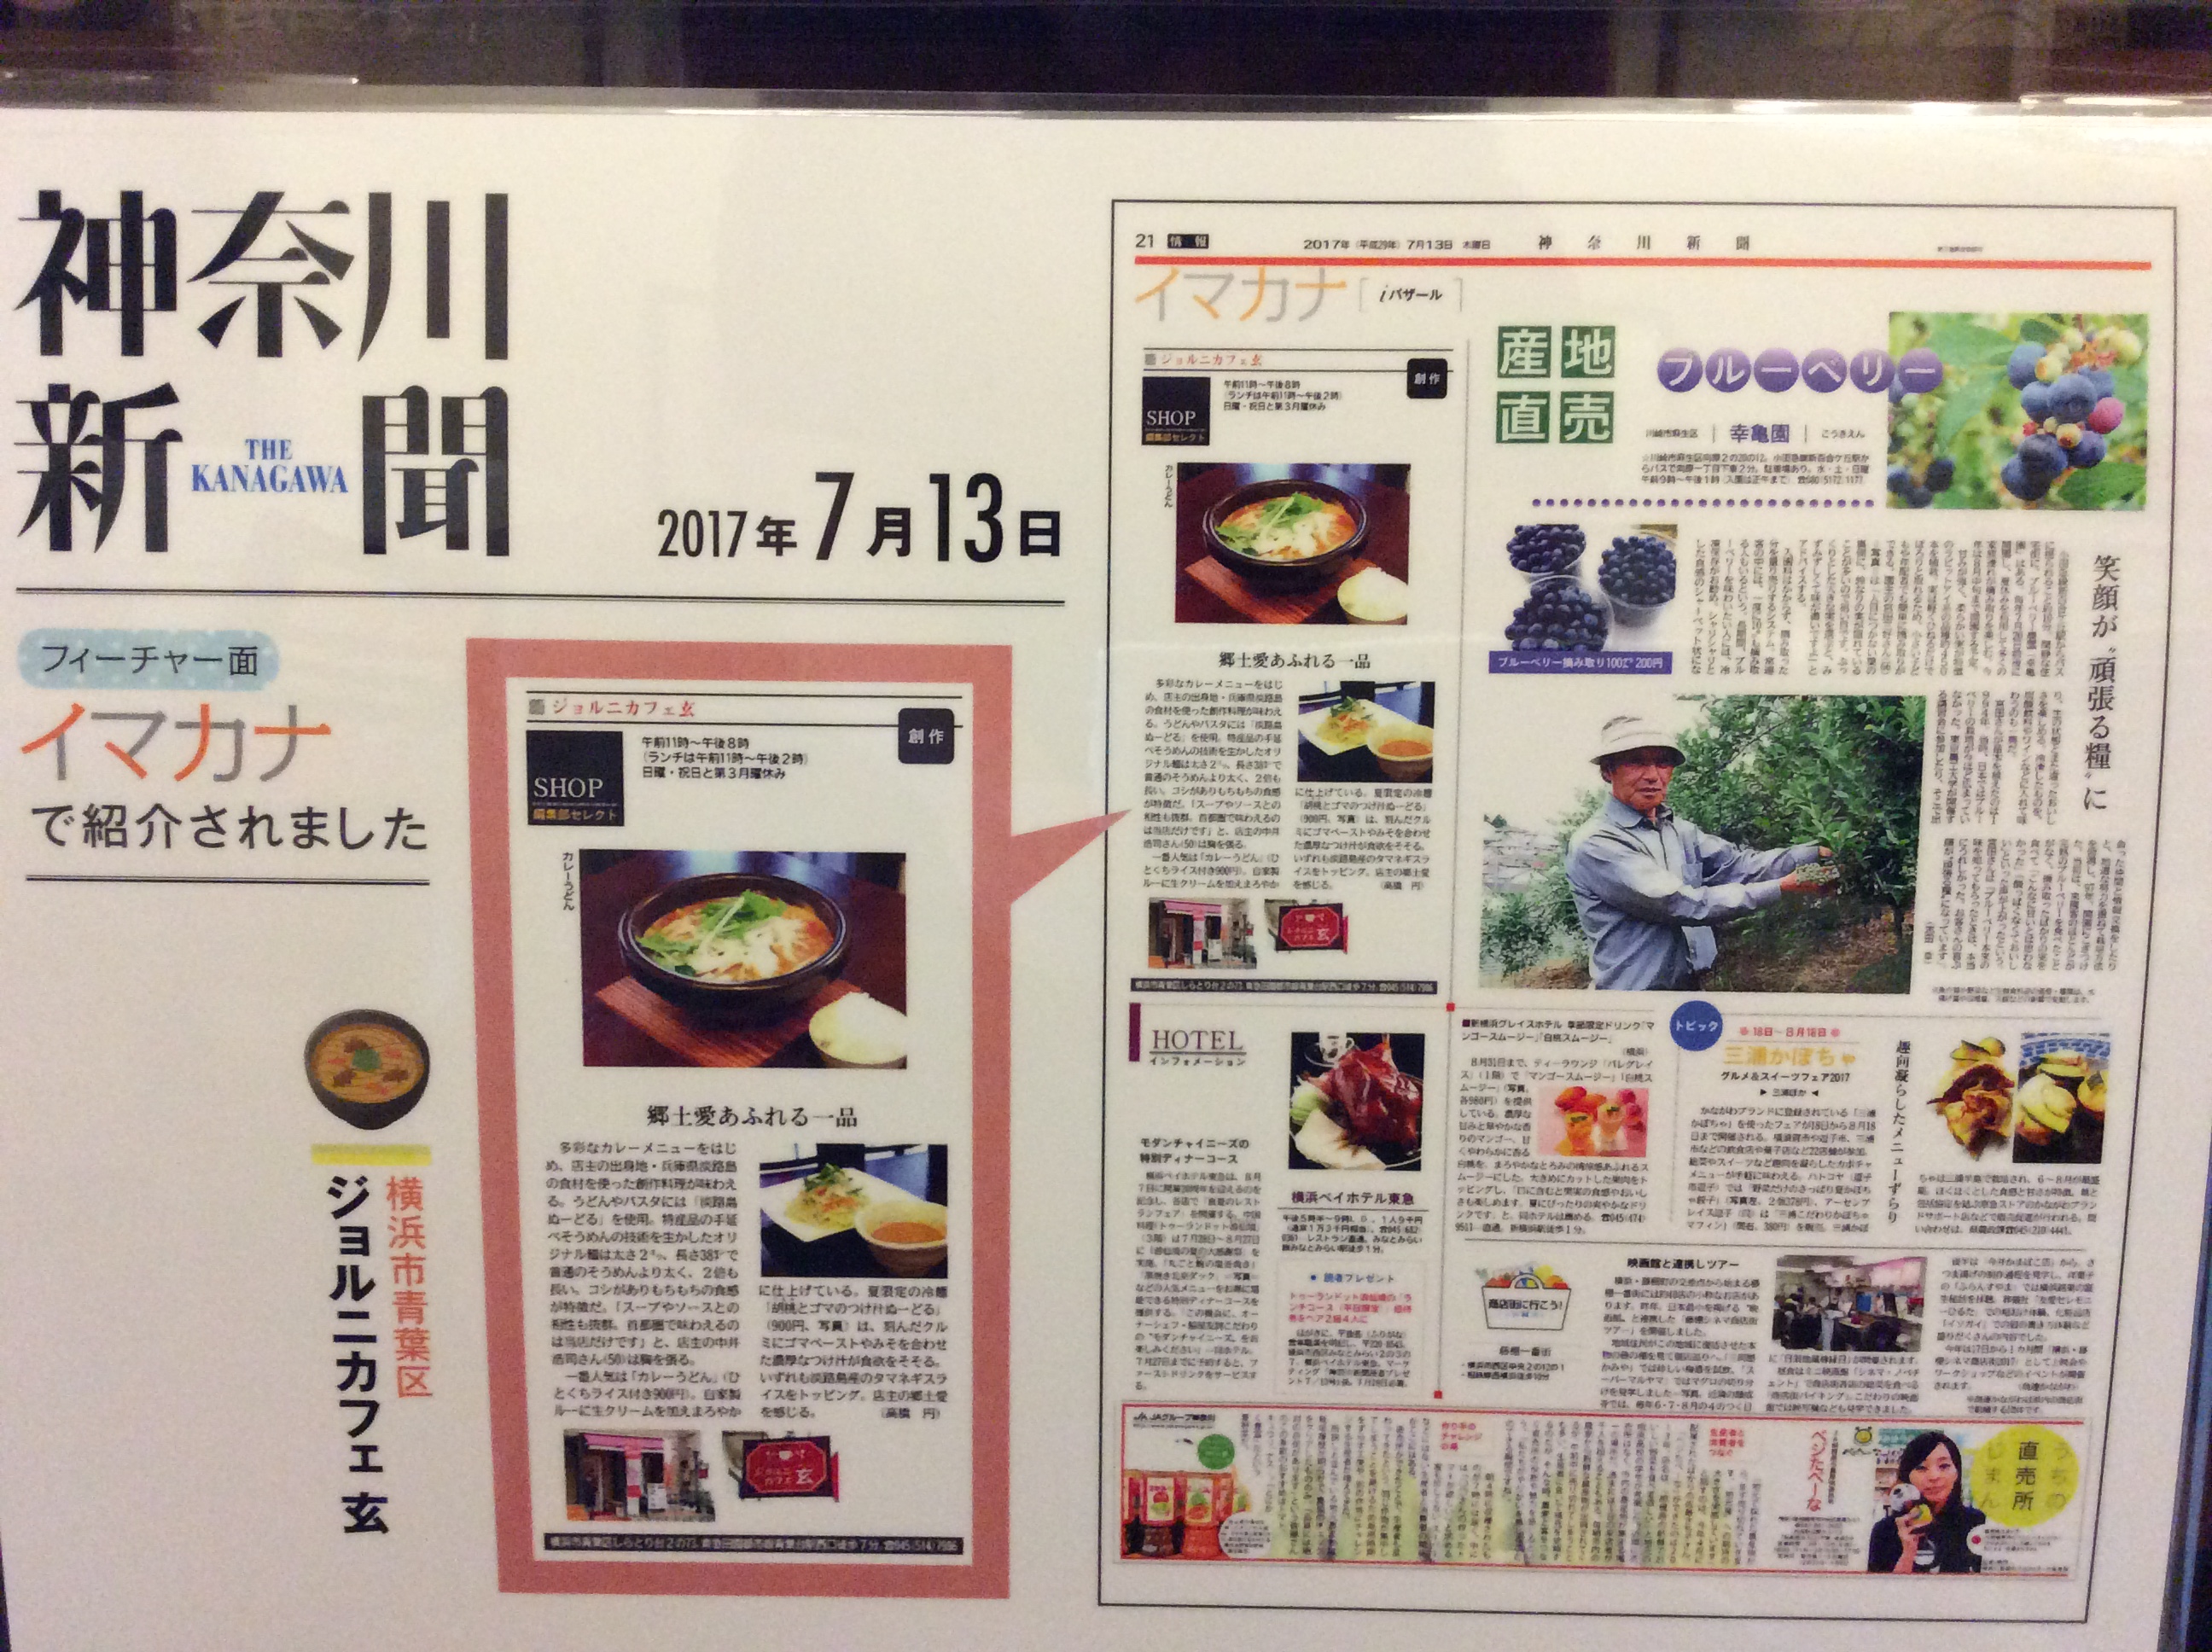 2017年7月13日　神奈川新聞『イマナカ』に掲載